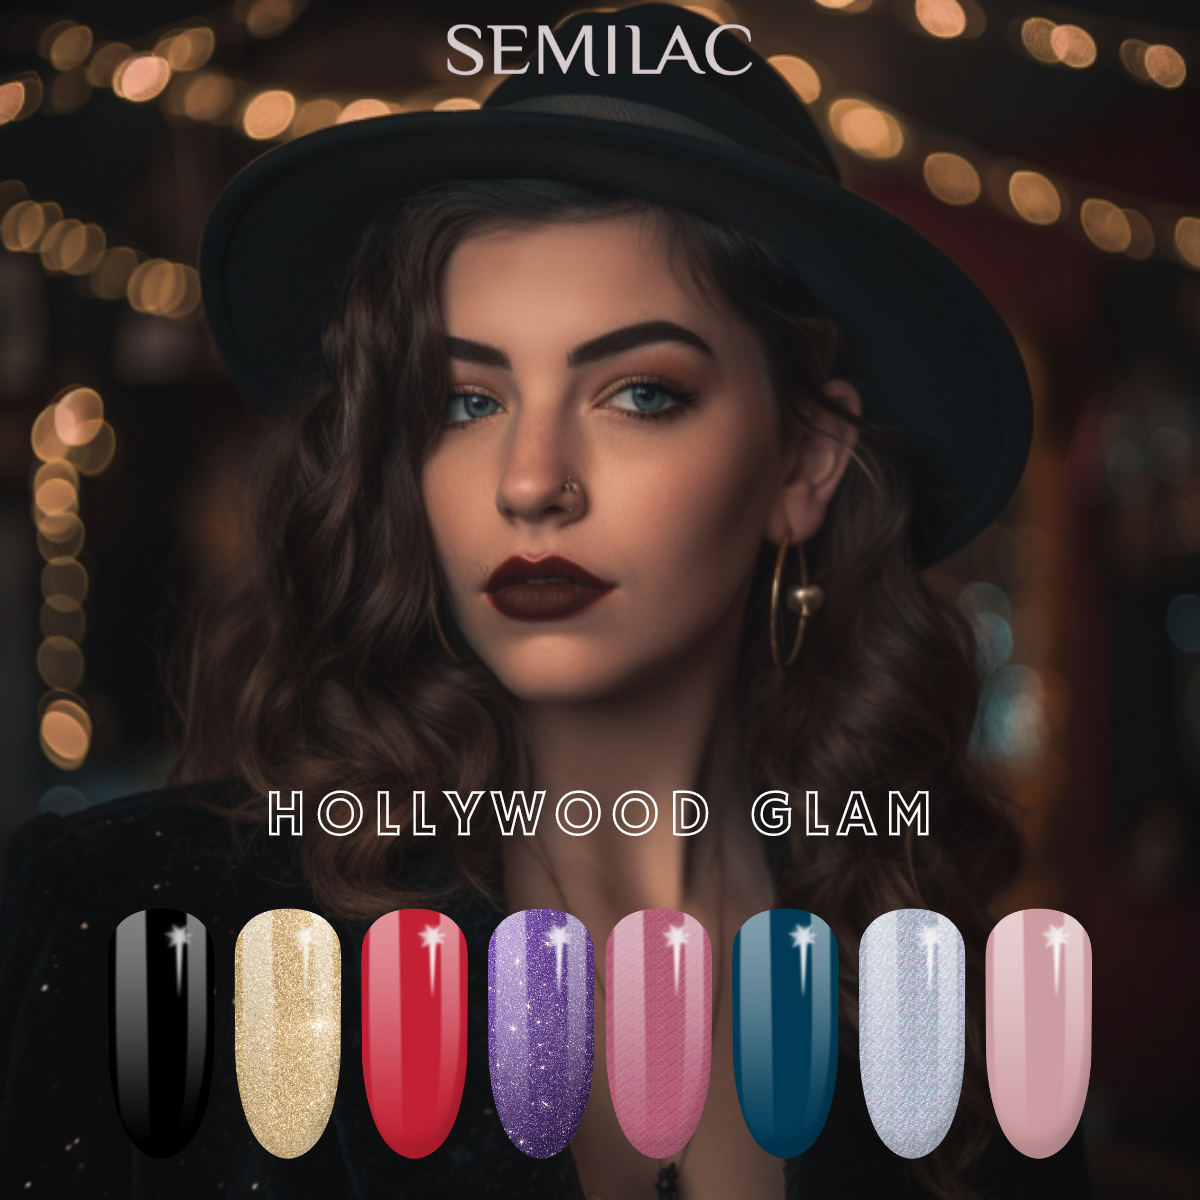 Semilac Hollywood Glam Bundle - Semilac UK